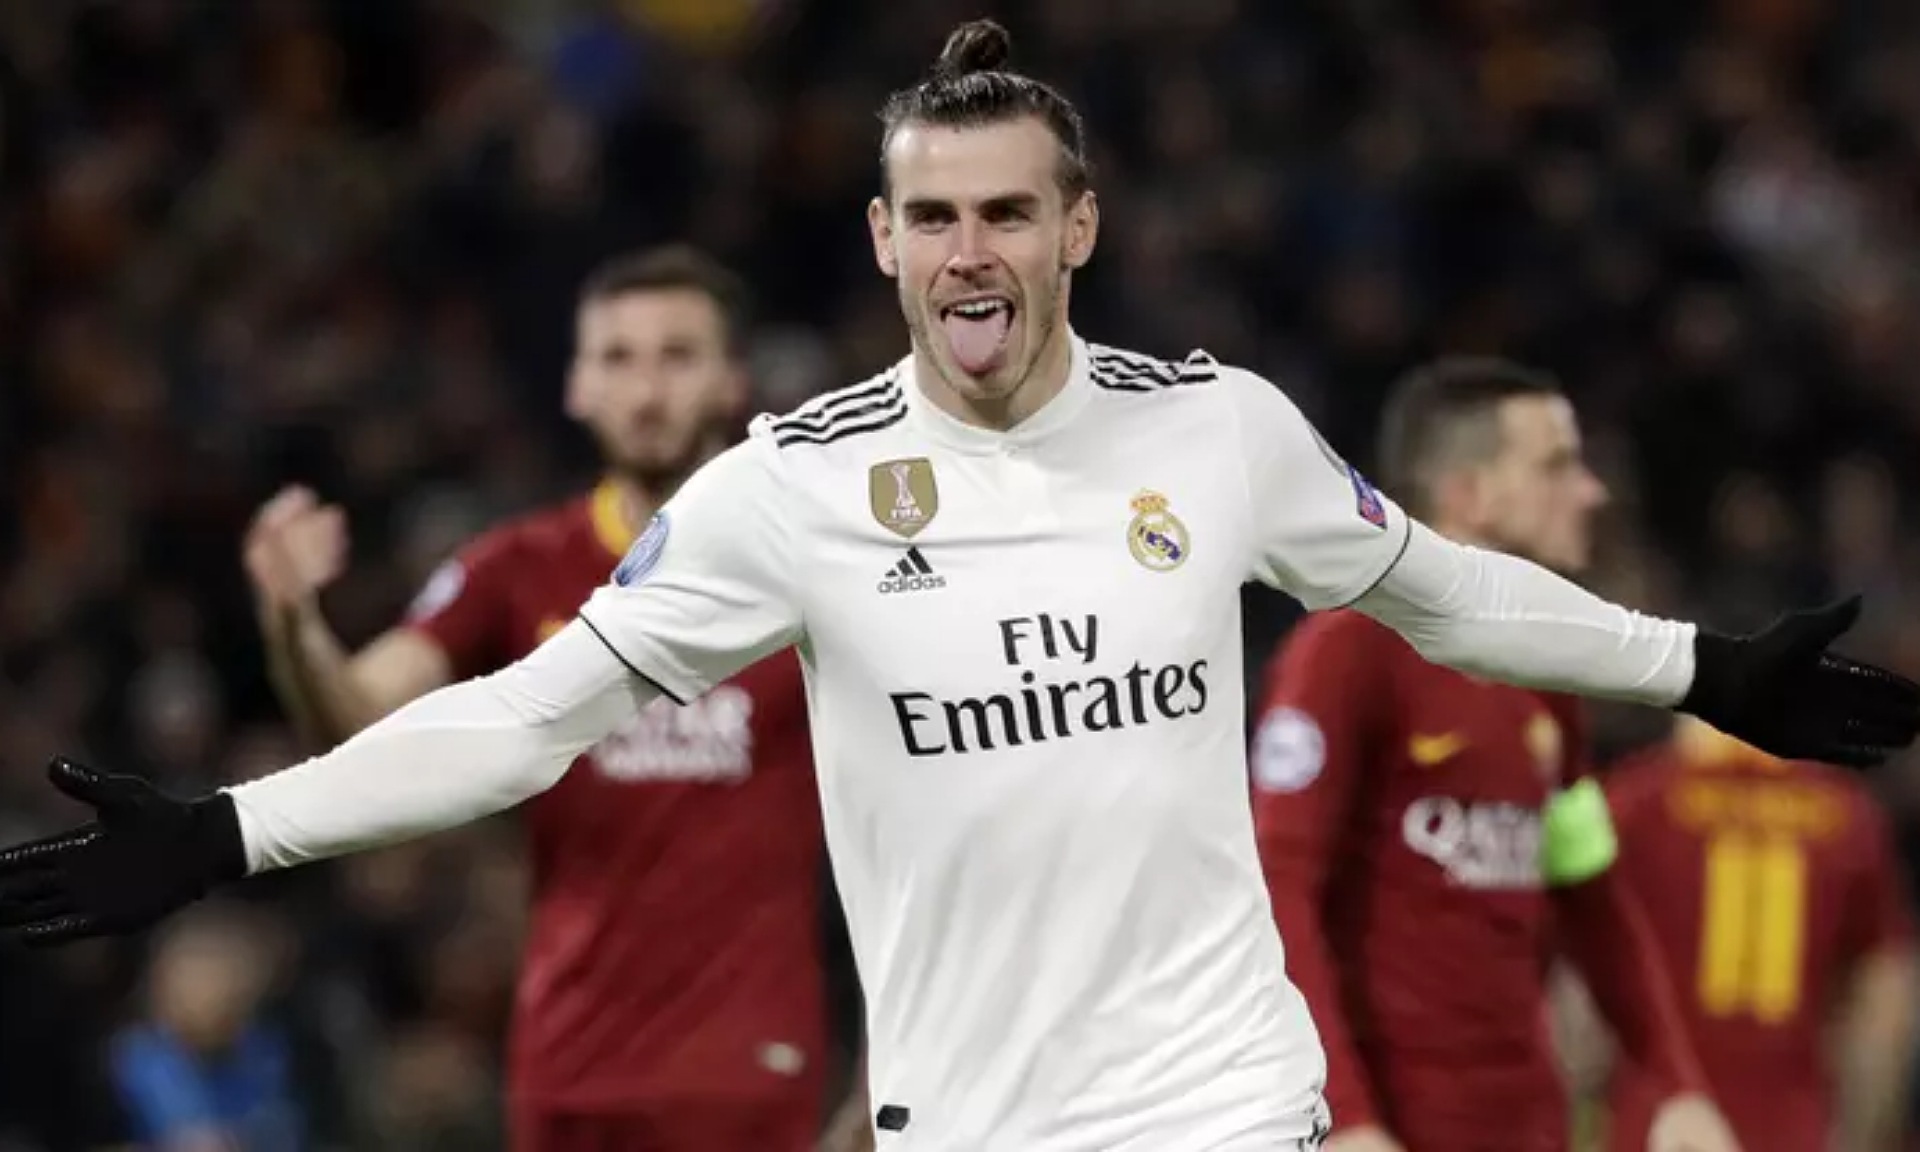 Dukungan untuk Jose Mourinho Agar Tottenham Hotspur Rekrut Gareth Bale